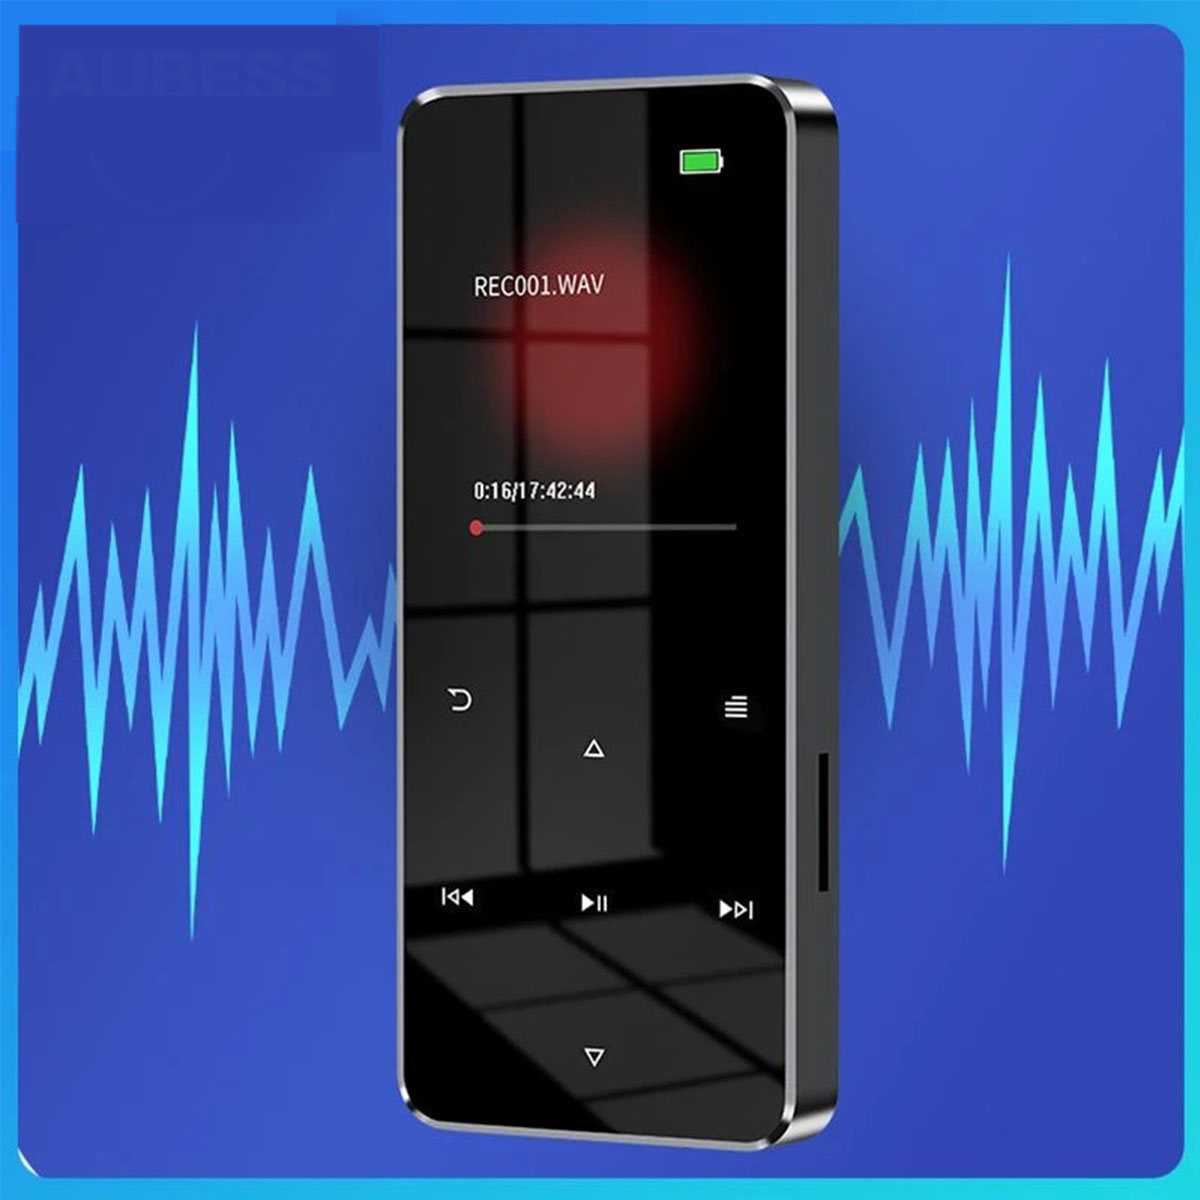 BRIGHTAKE MP3 Walkman 64GB 64 Student silber MP4 - GB, Bluetooth, FM, Edition